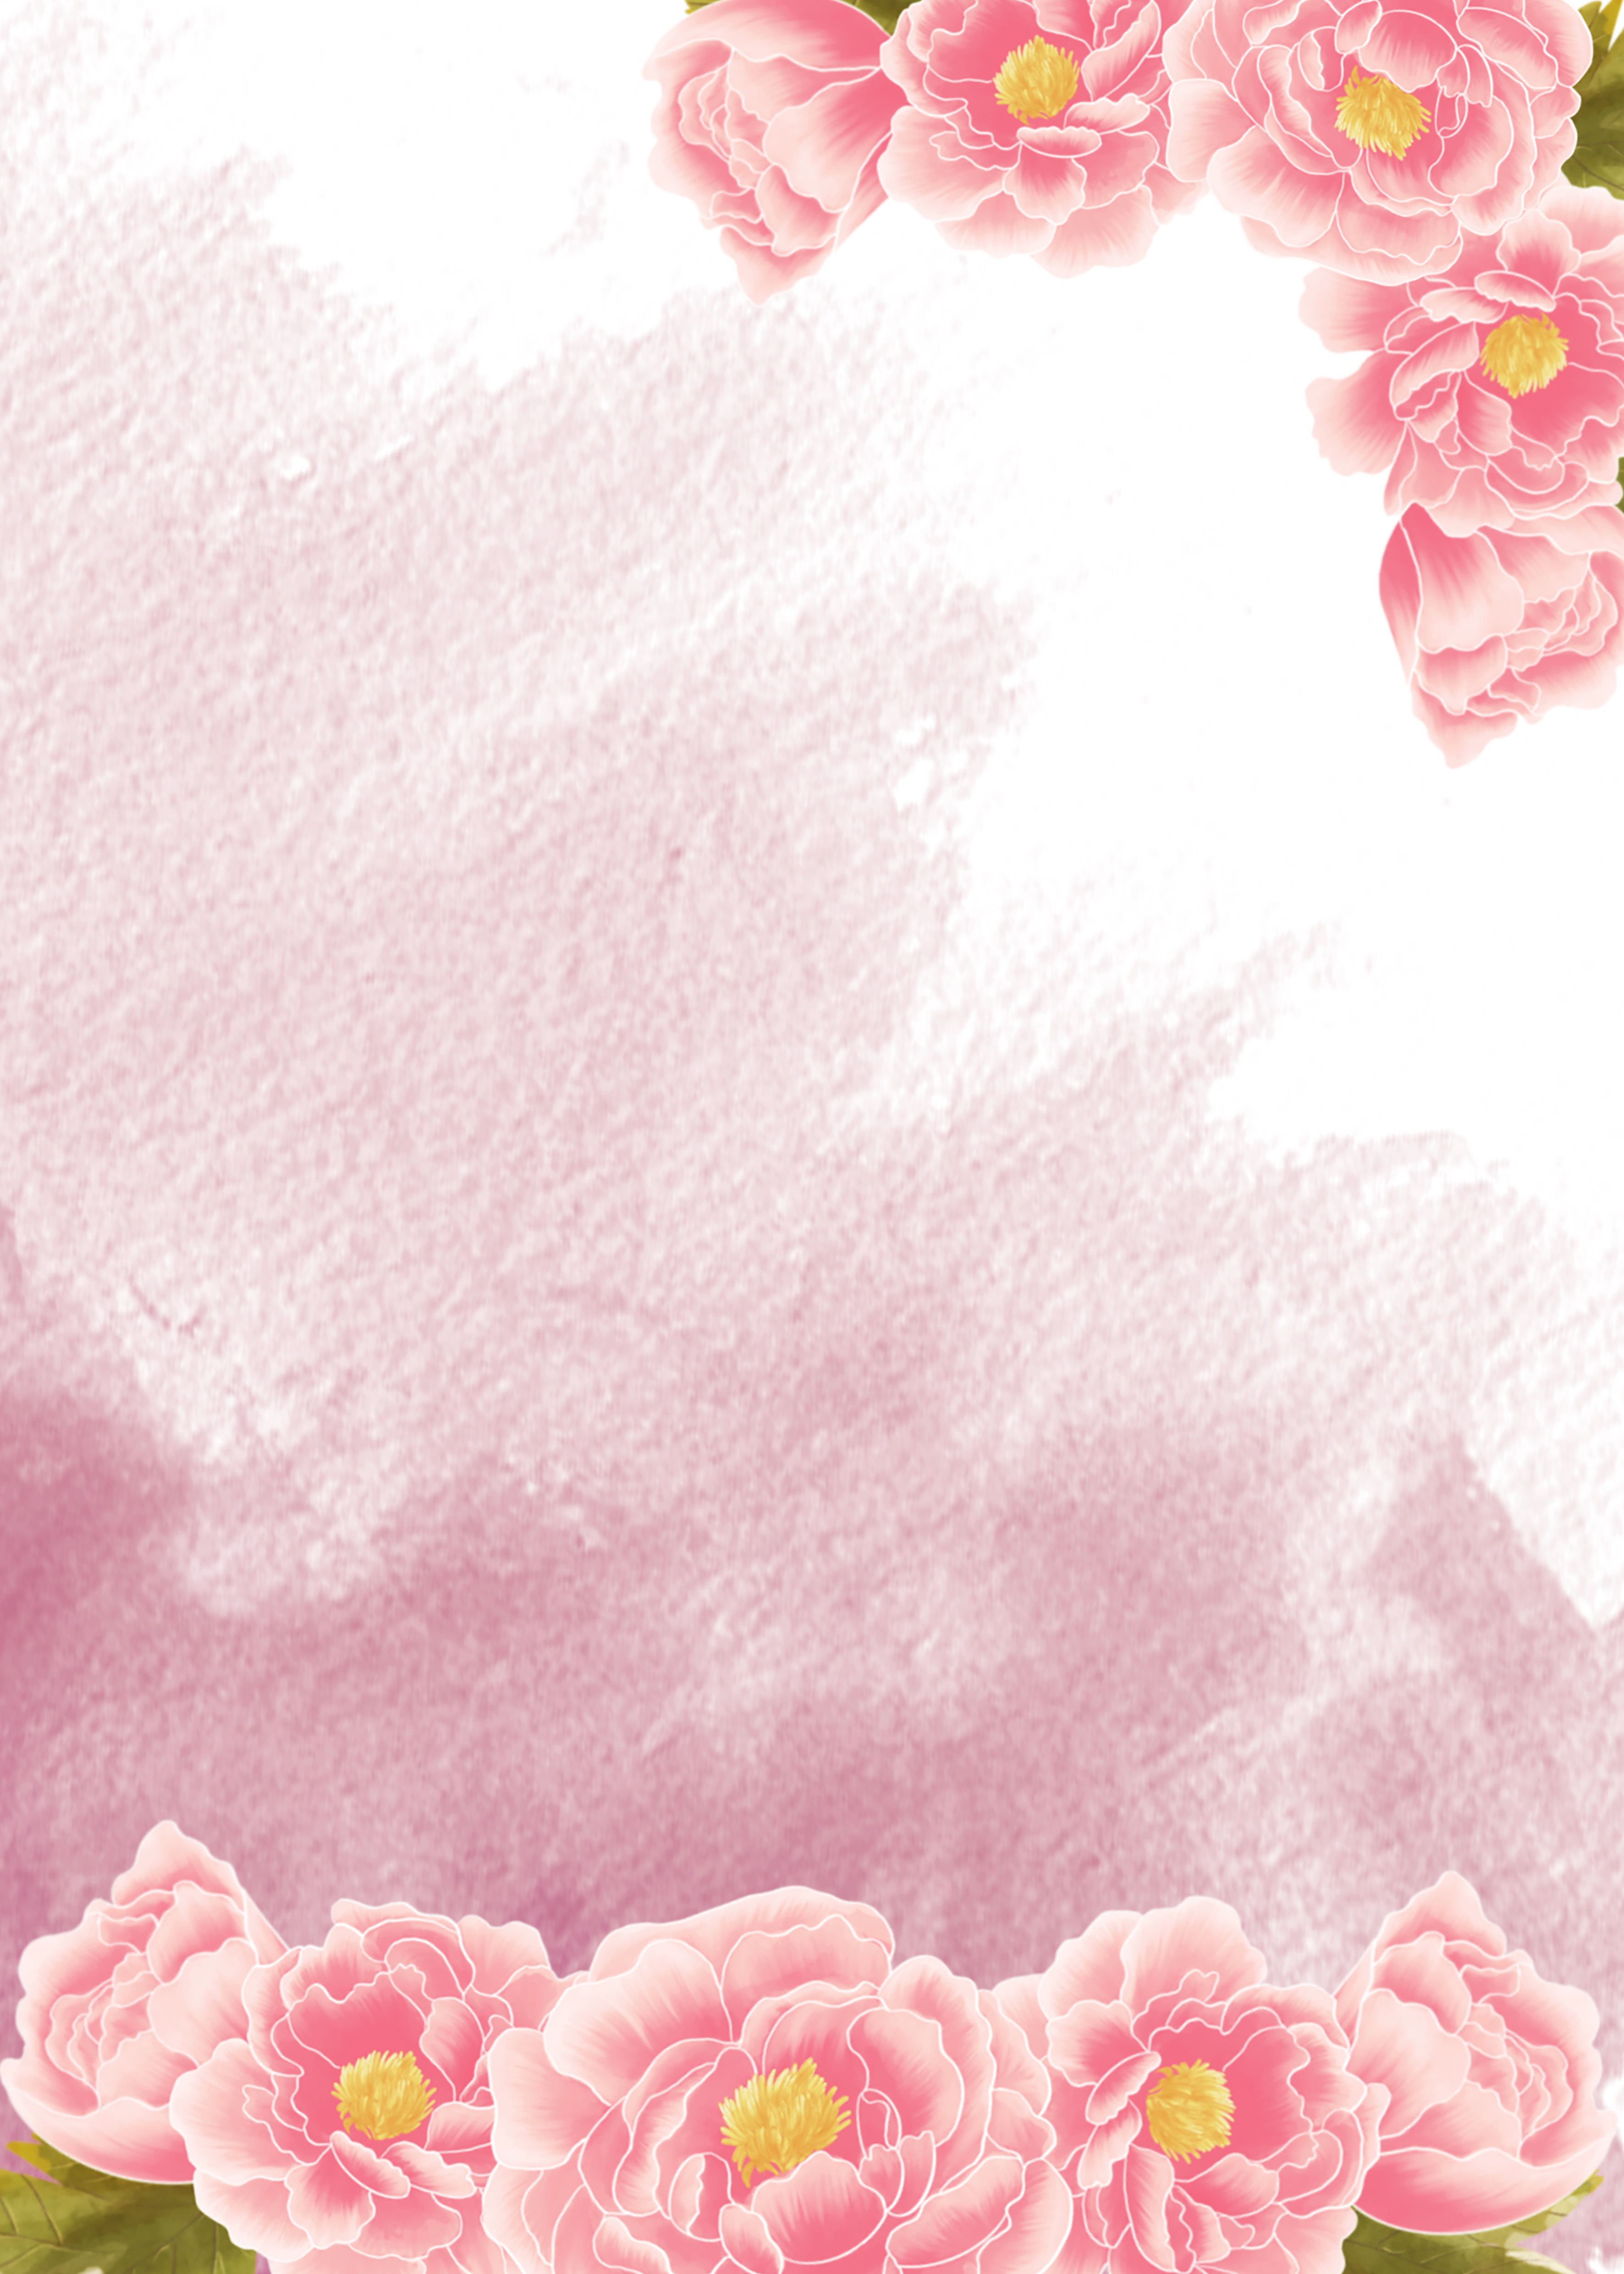 灰粉色笔触水彩风格花卉背景图片